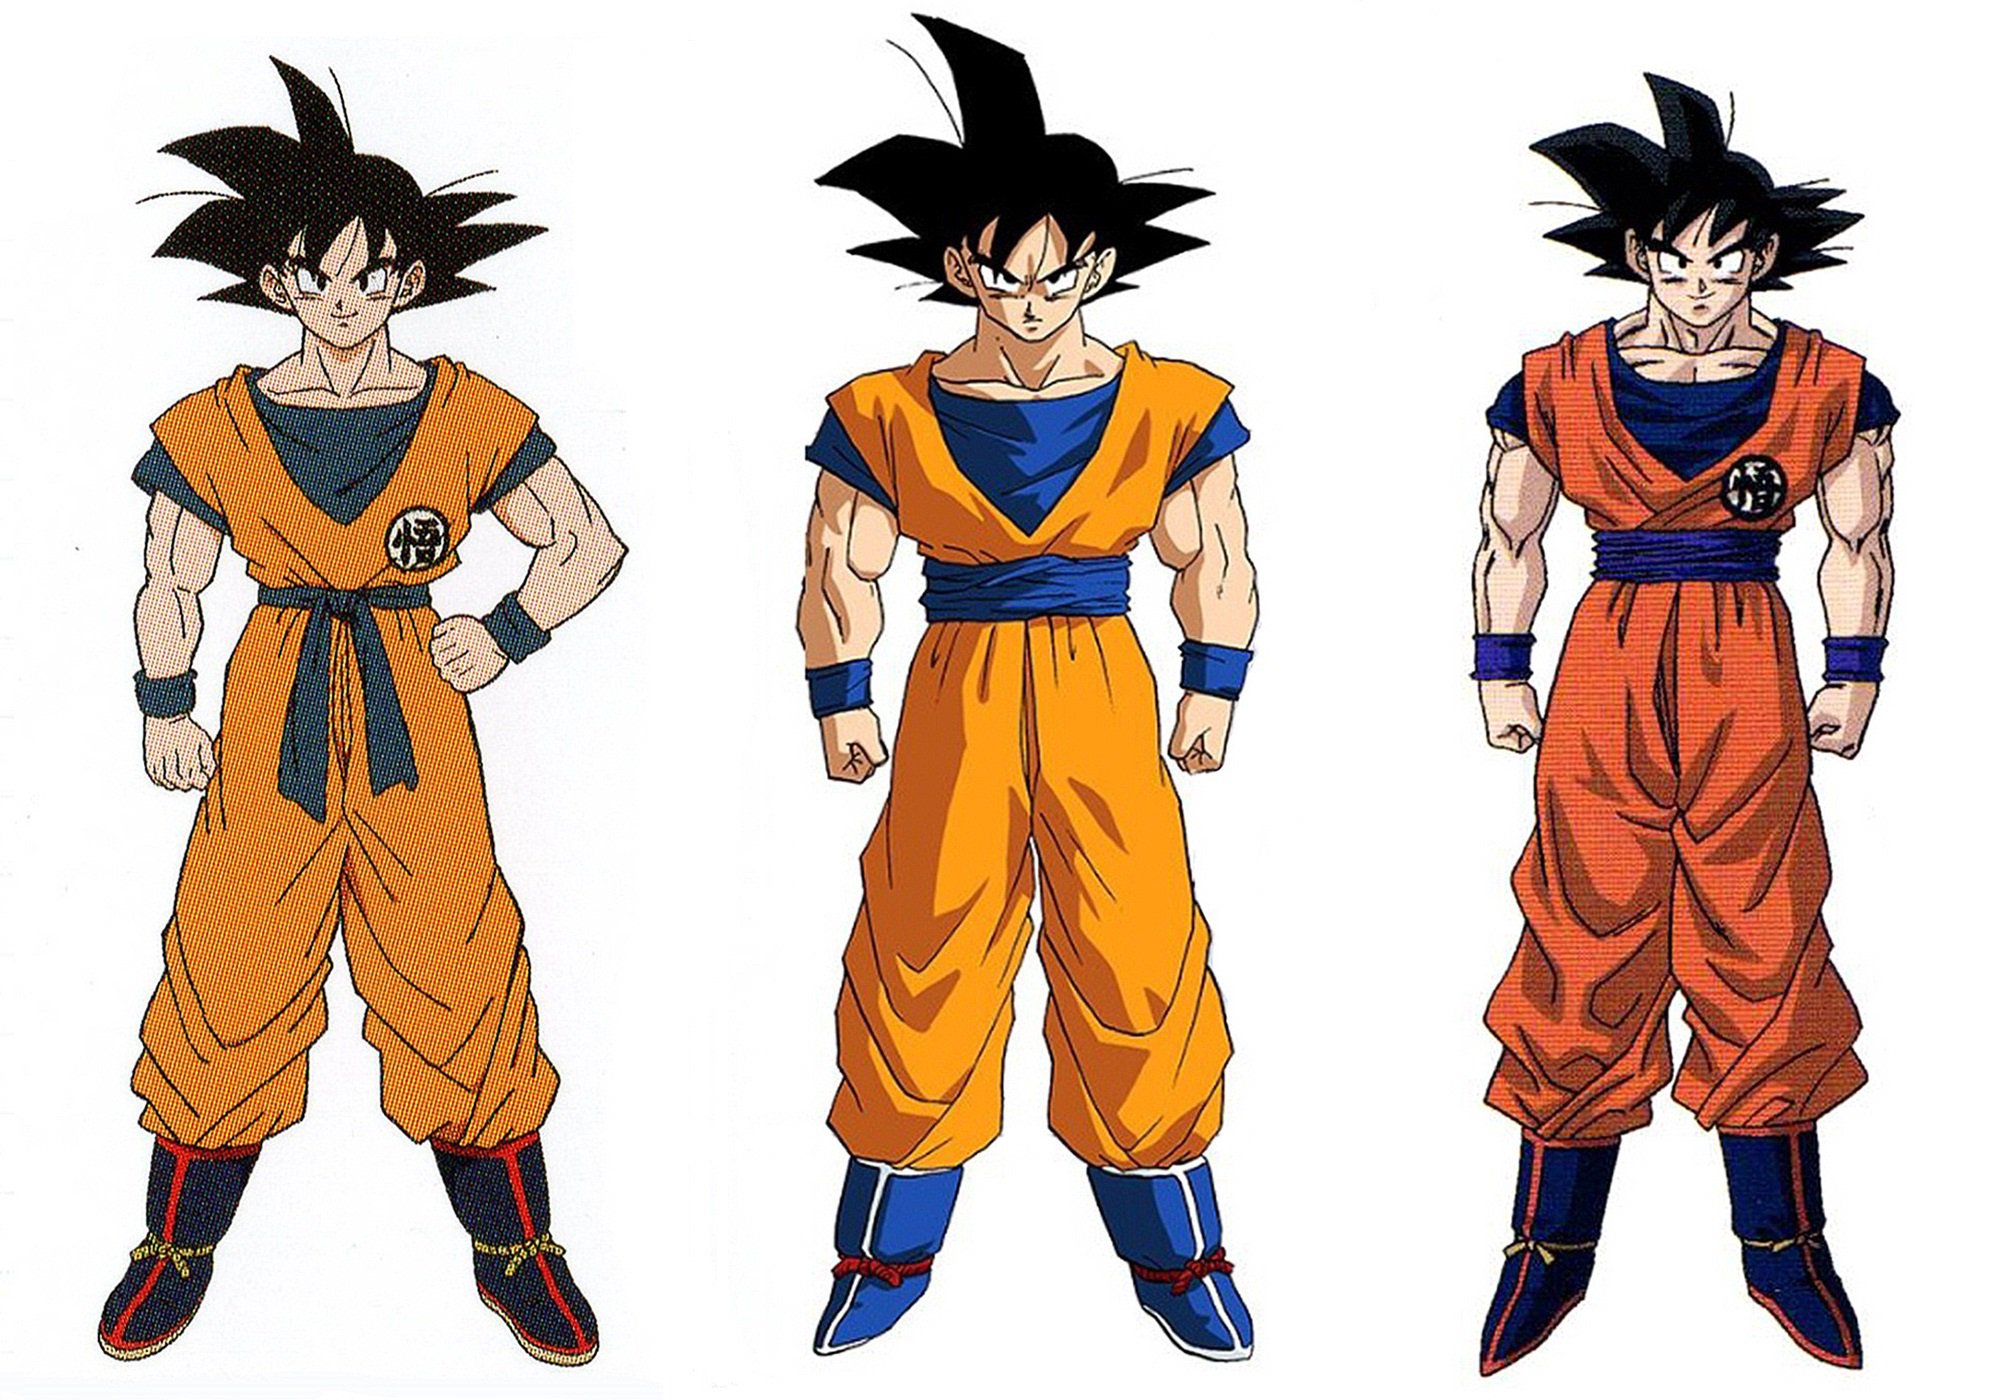 Goku drawn by: Naohiro Shintani, Akira Toriyama and Tadayoshi Yamamuro. 